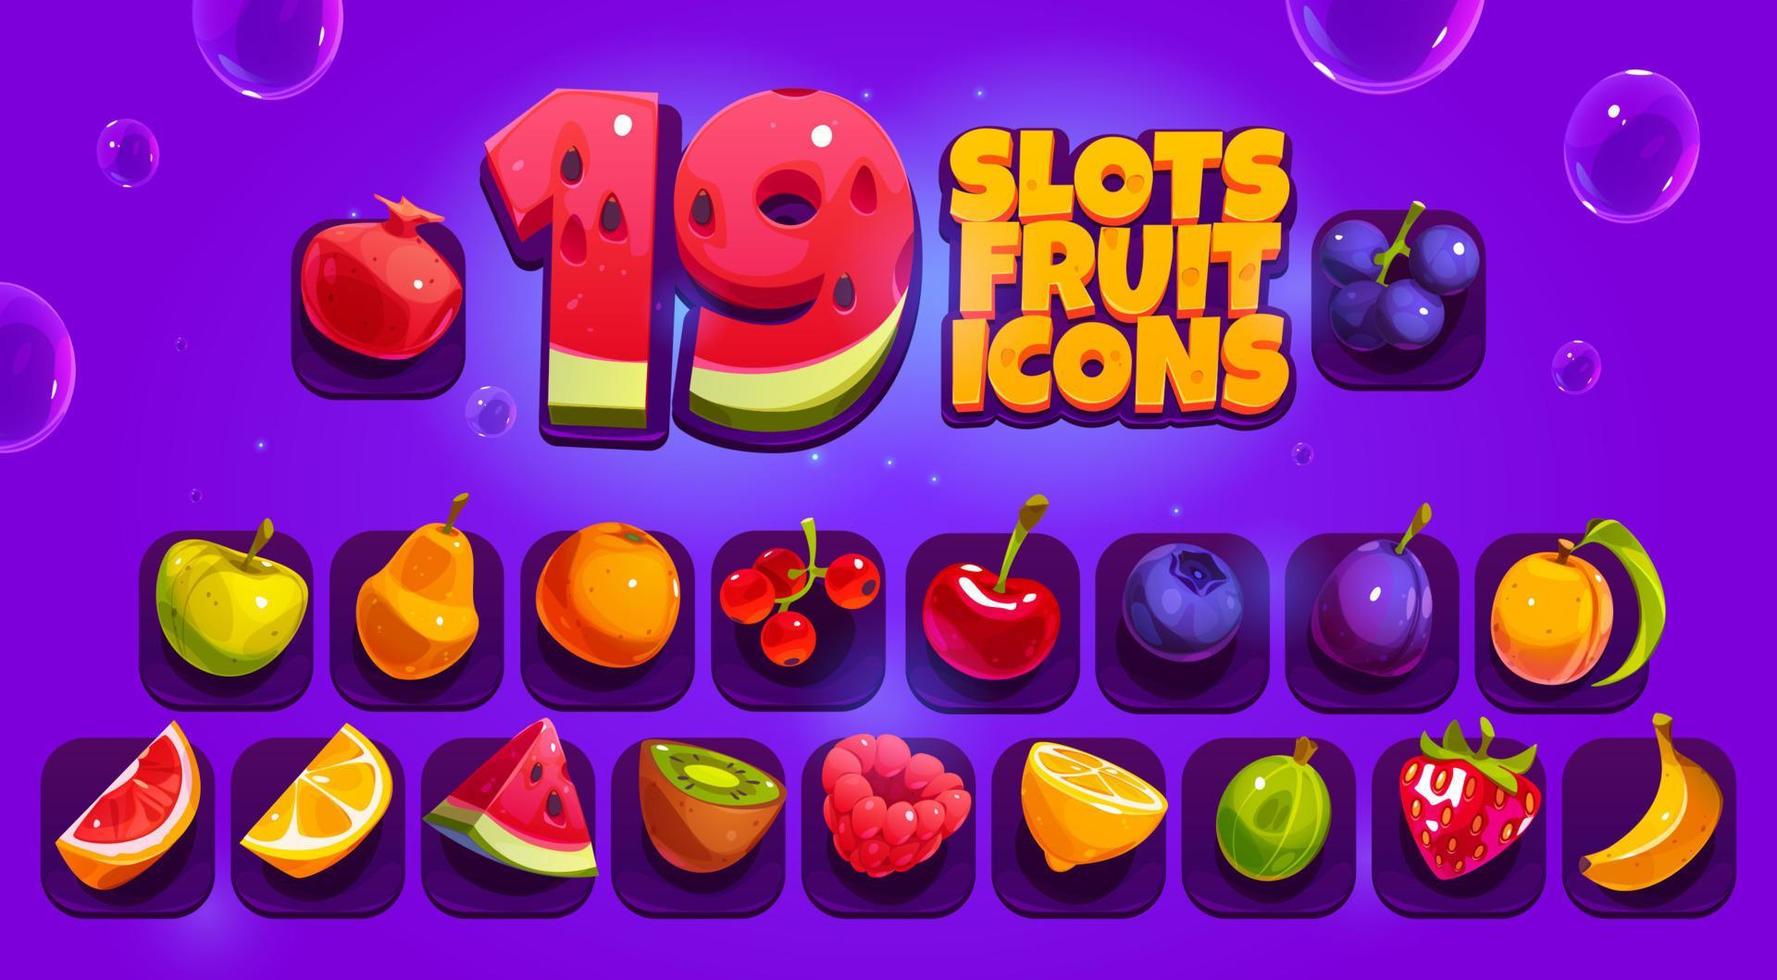 Iconos de frutas y bayas del juego de tragamonedas vector